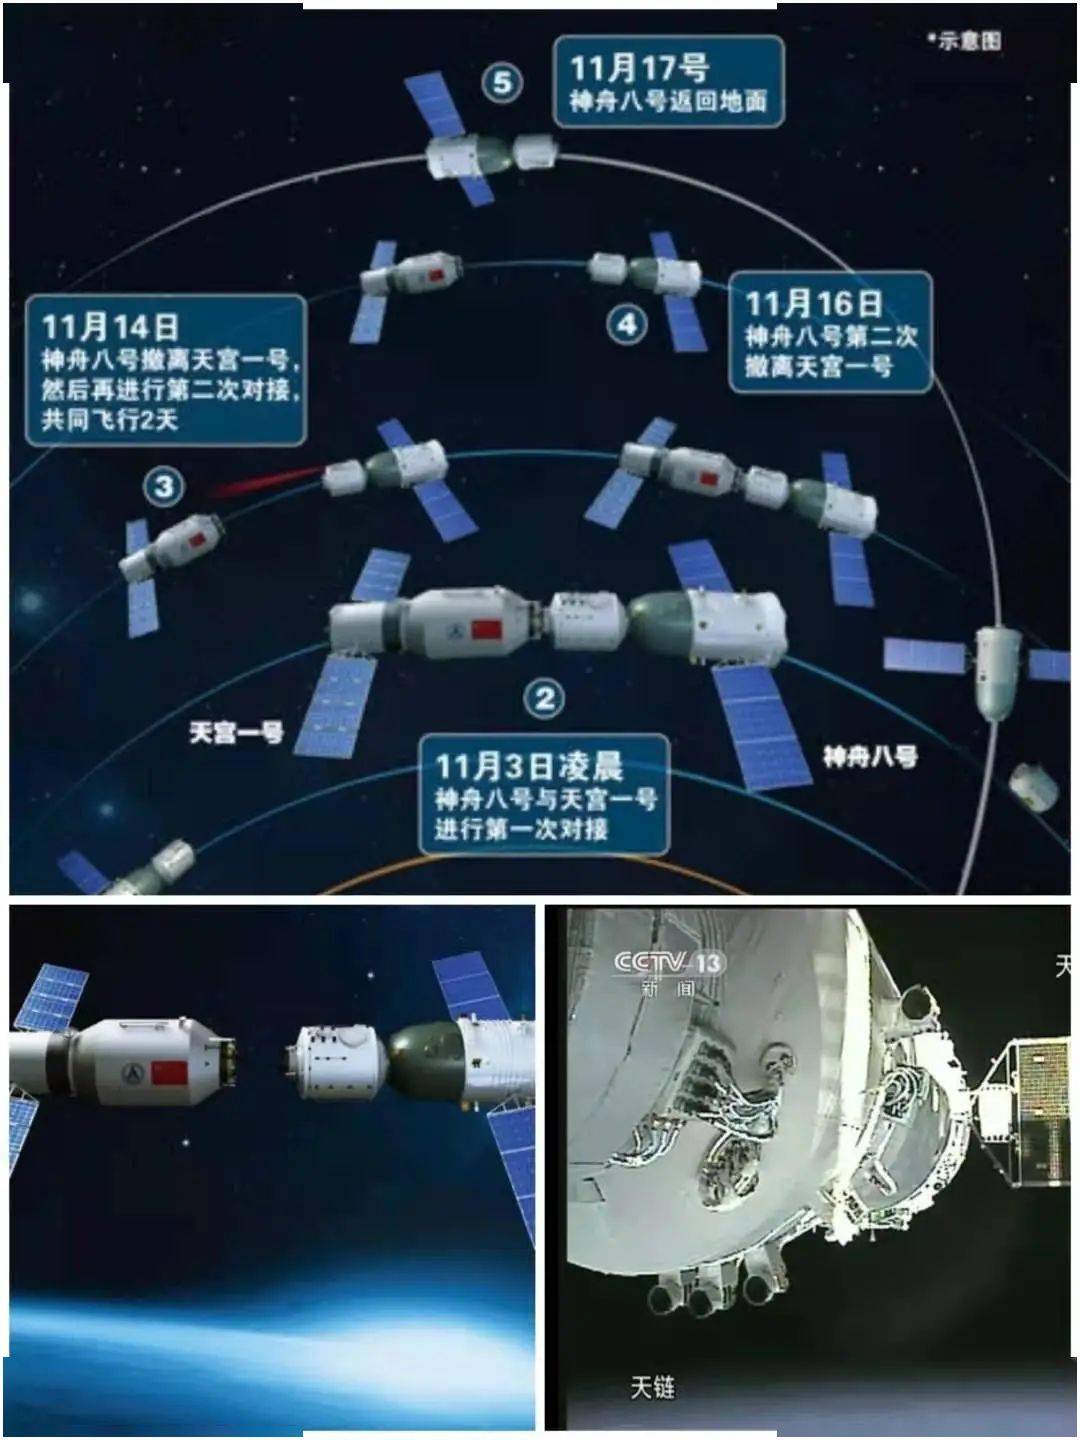 2011年11月1日,神舟八号飞船在中国酒泉卫星发射中心发射升空,进入